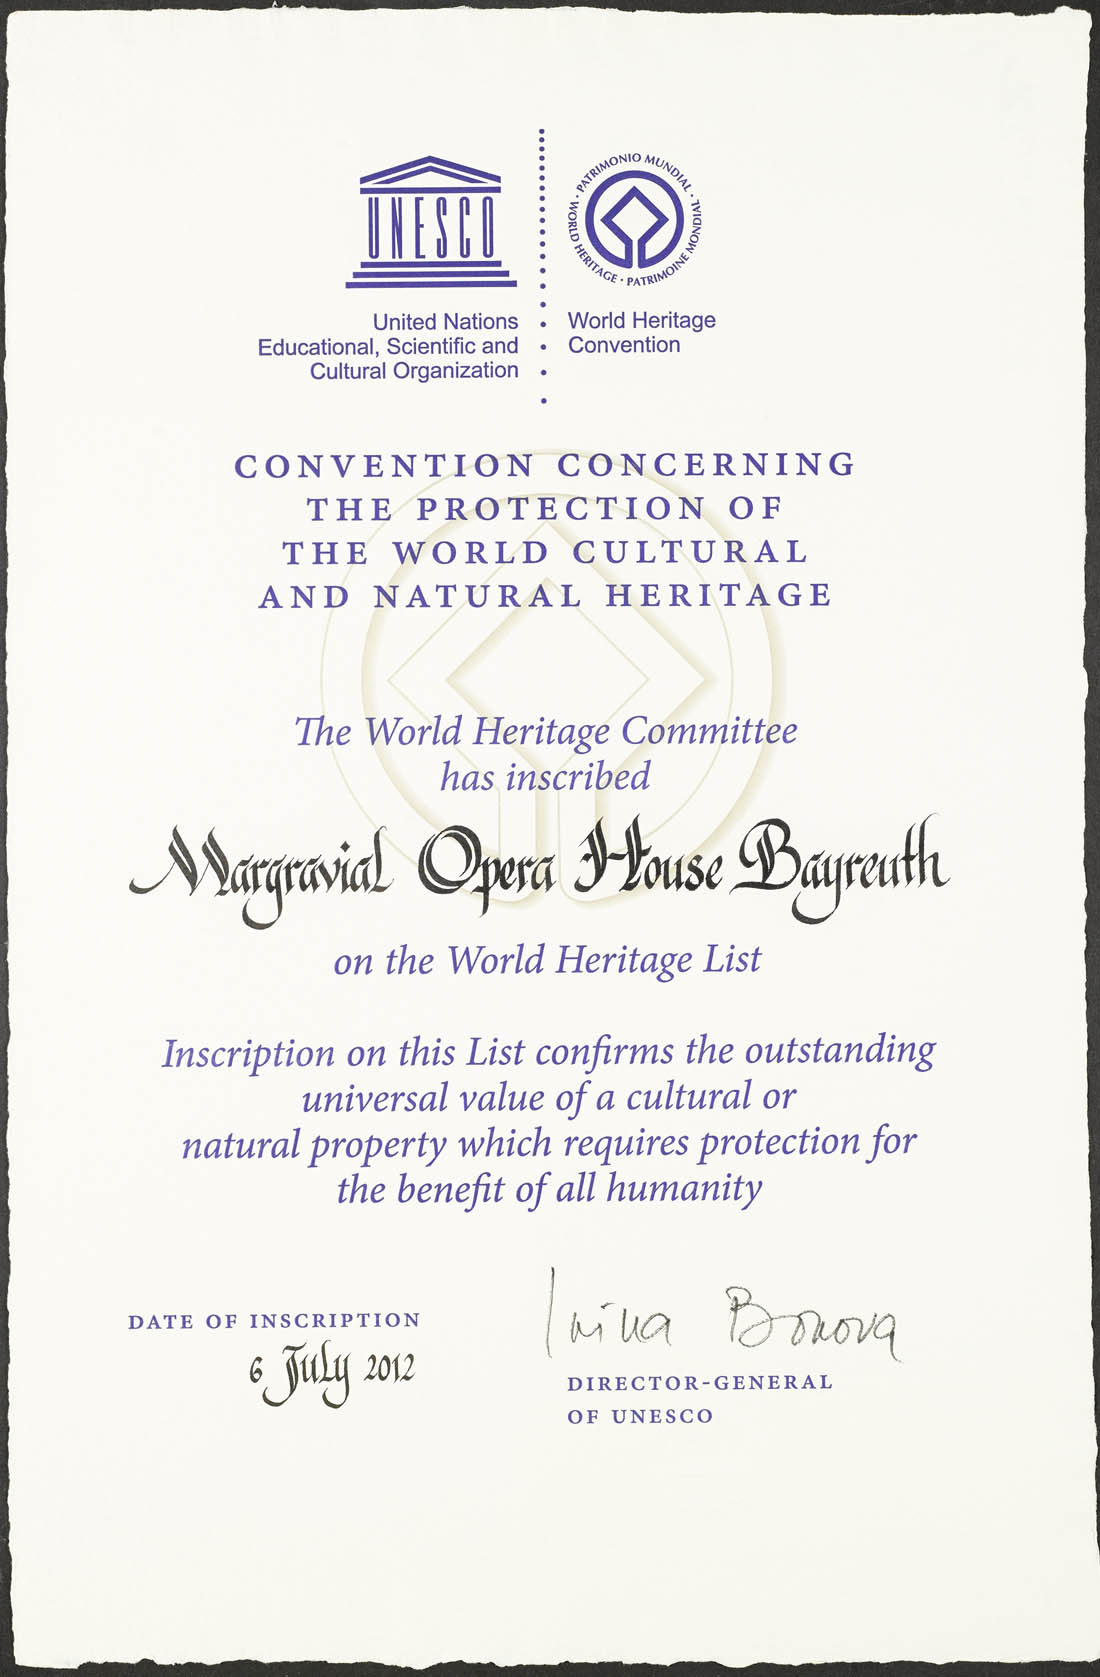 UNESCO-Urkunde zur Aufnahe auf die Welterbeliste des Markgräfischen Opernhauses